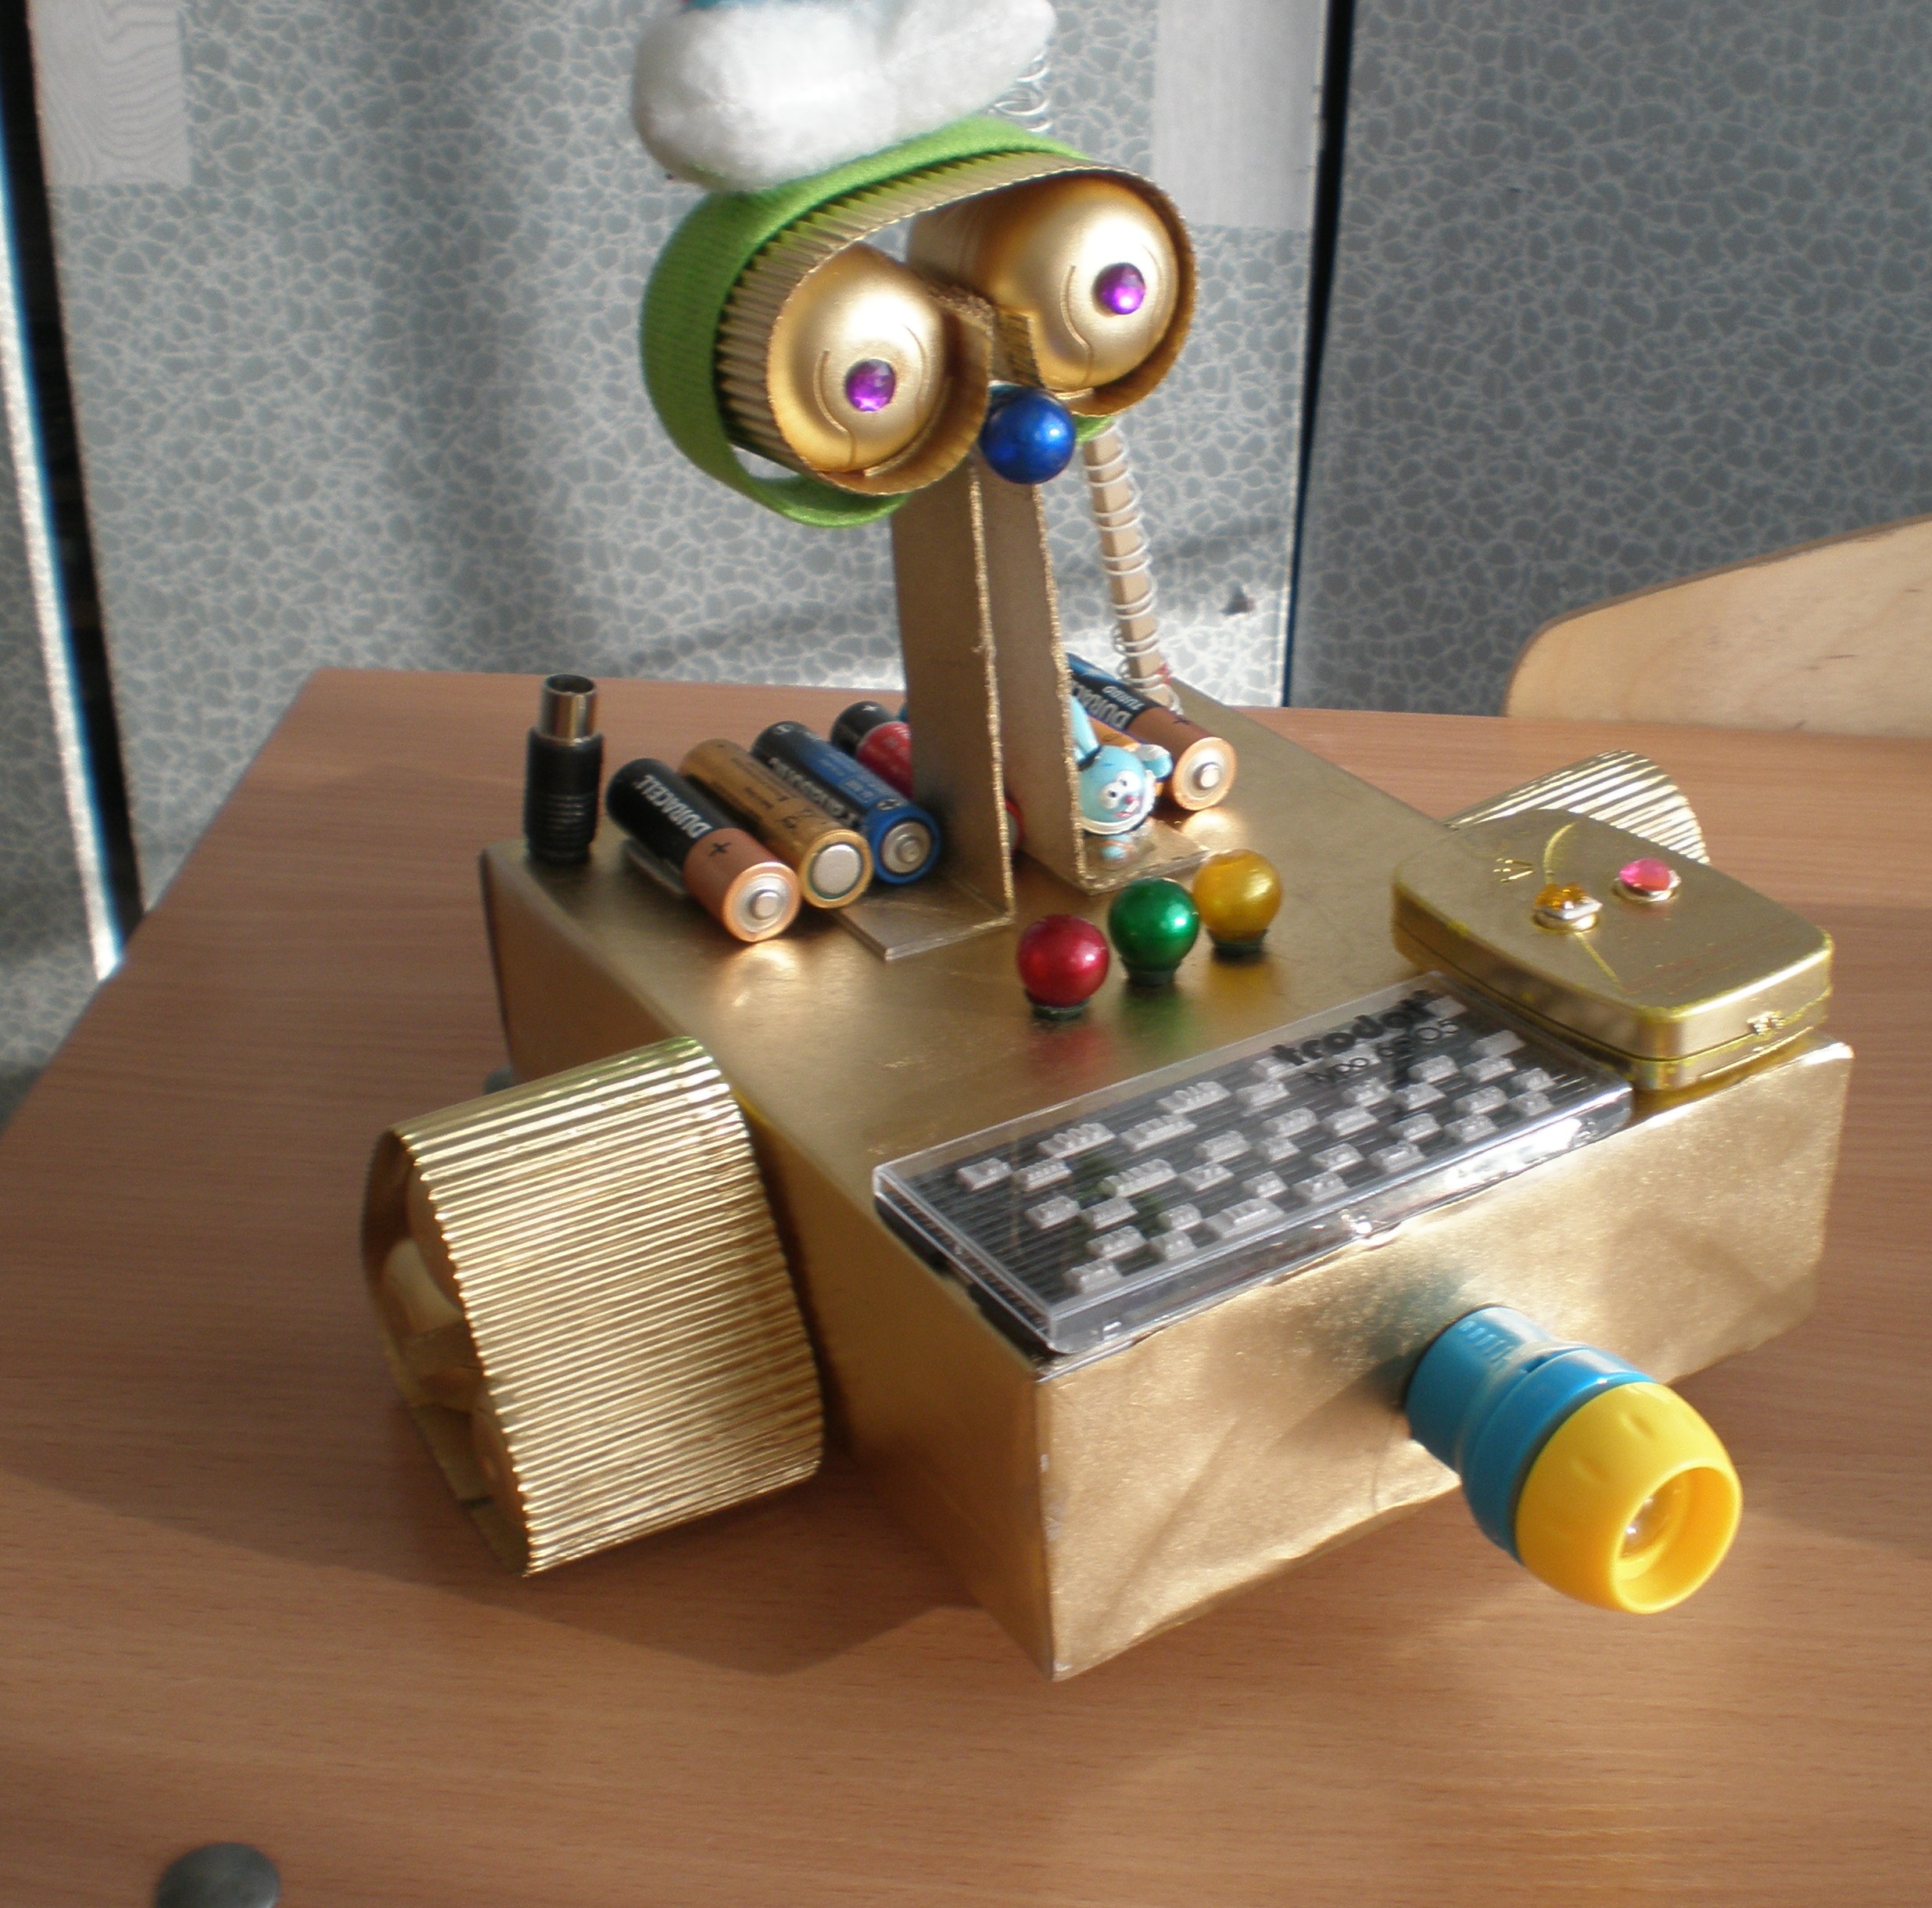 Творческий проект Мой робот - Крош